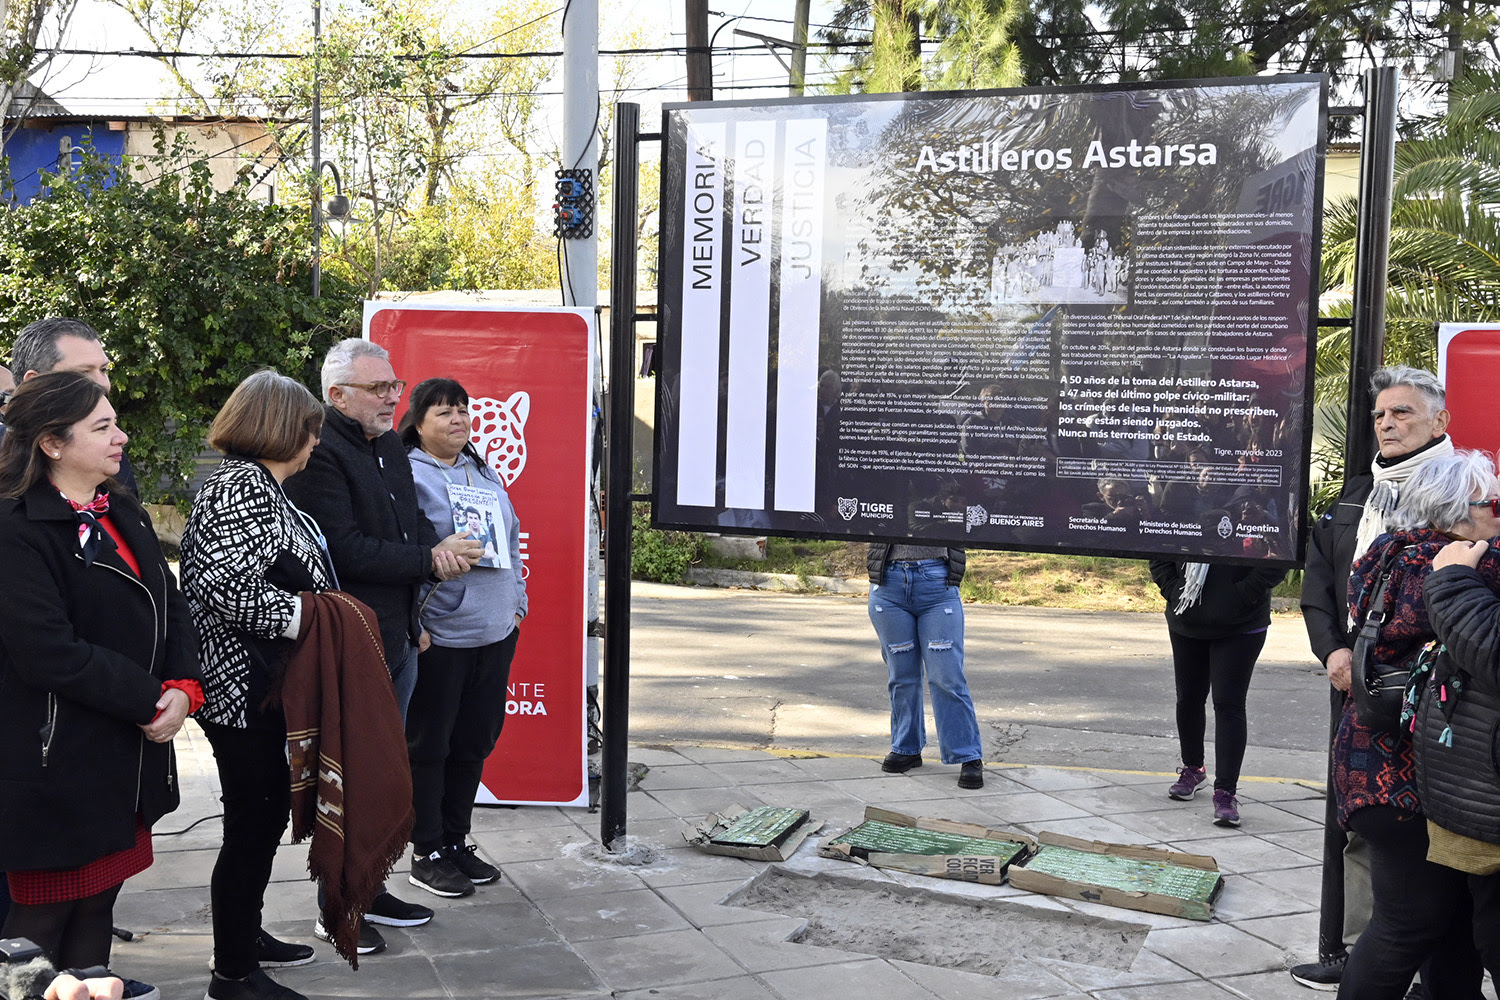 Nación, Provincia y Tigre señalizan Solís y Newton a 50 Años de la toma de Astarsa